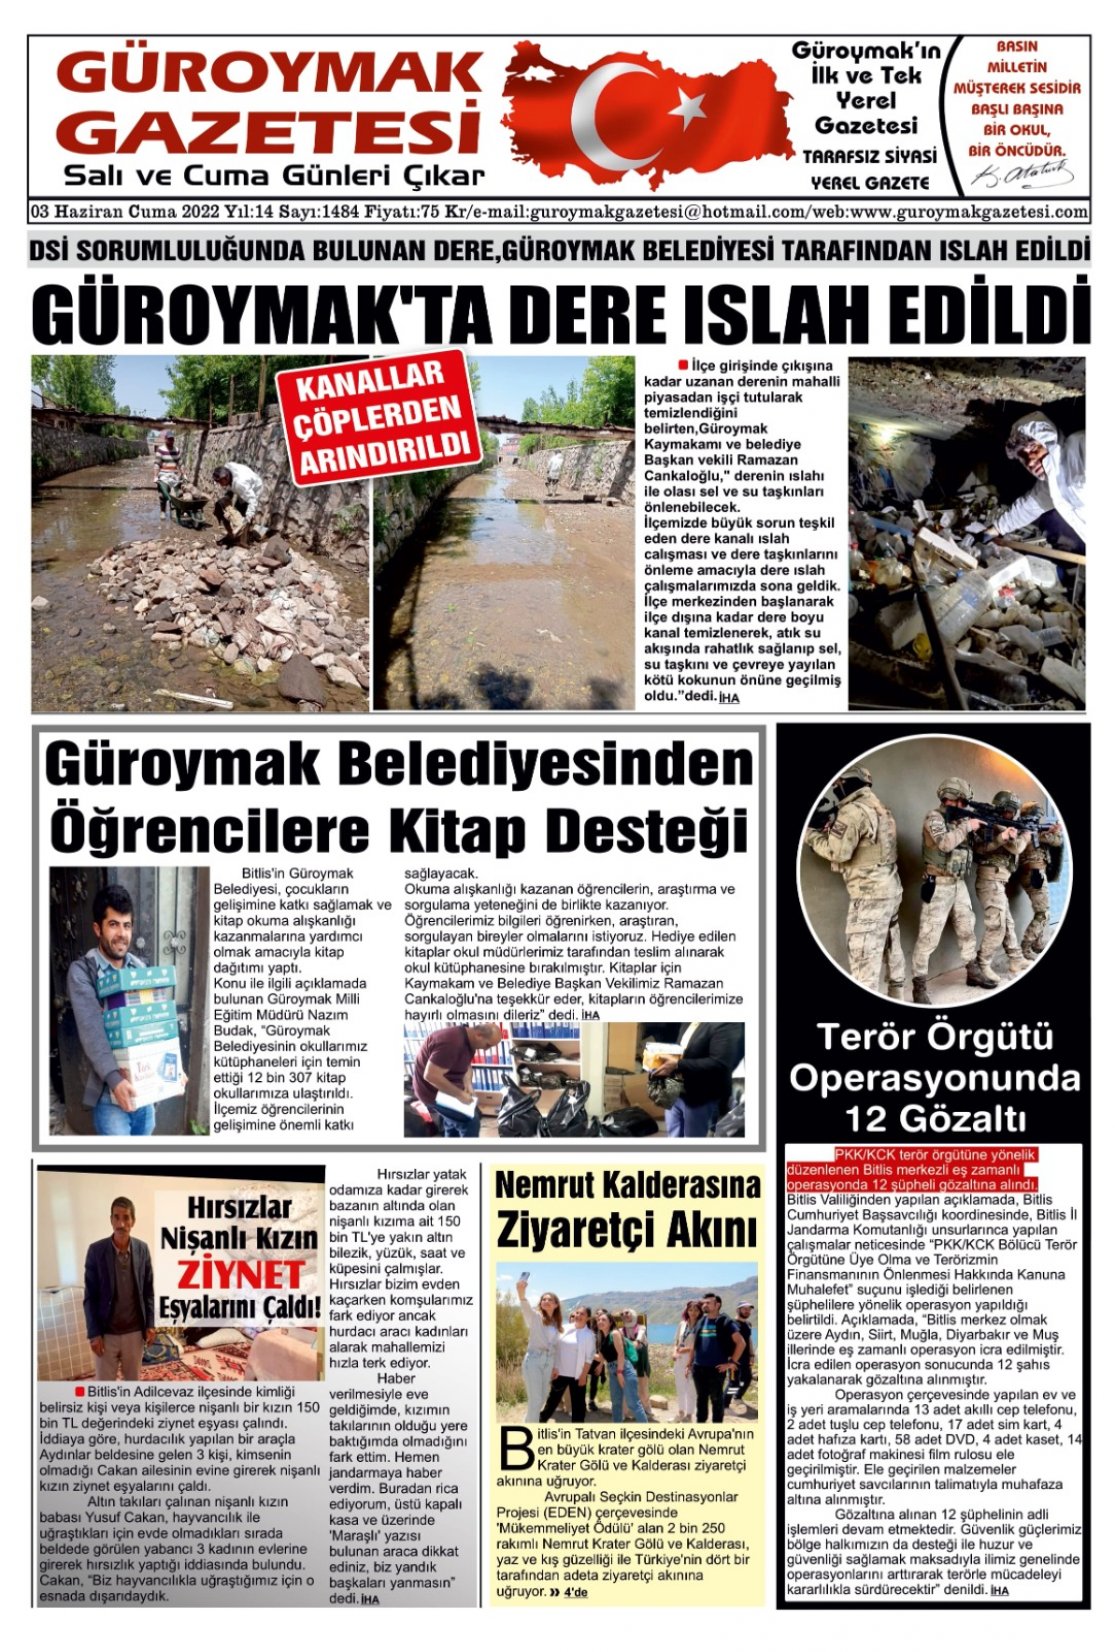 Güroymak Gazetesi IMG-20220602-WA0010.jpg Sayılı Gazete Küpürü